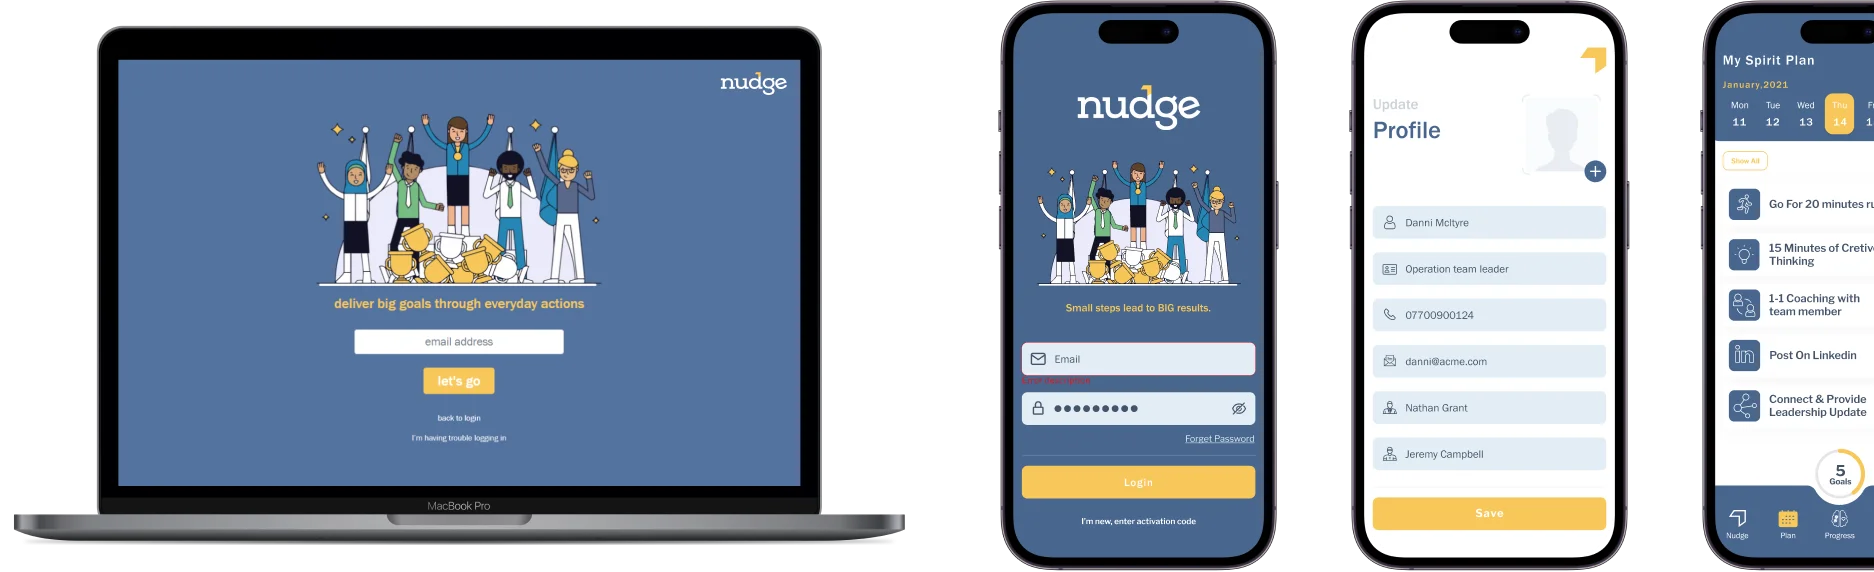 nudge-about-habit-app